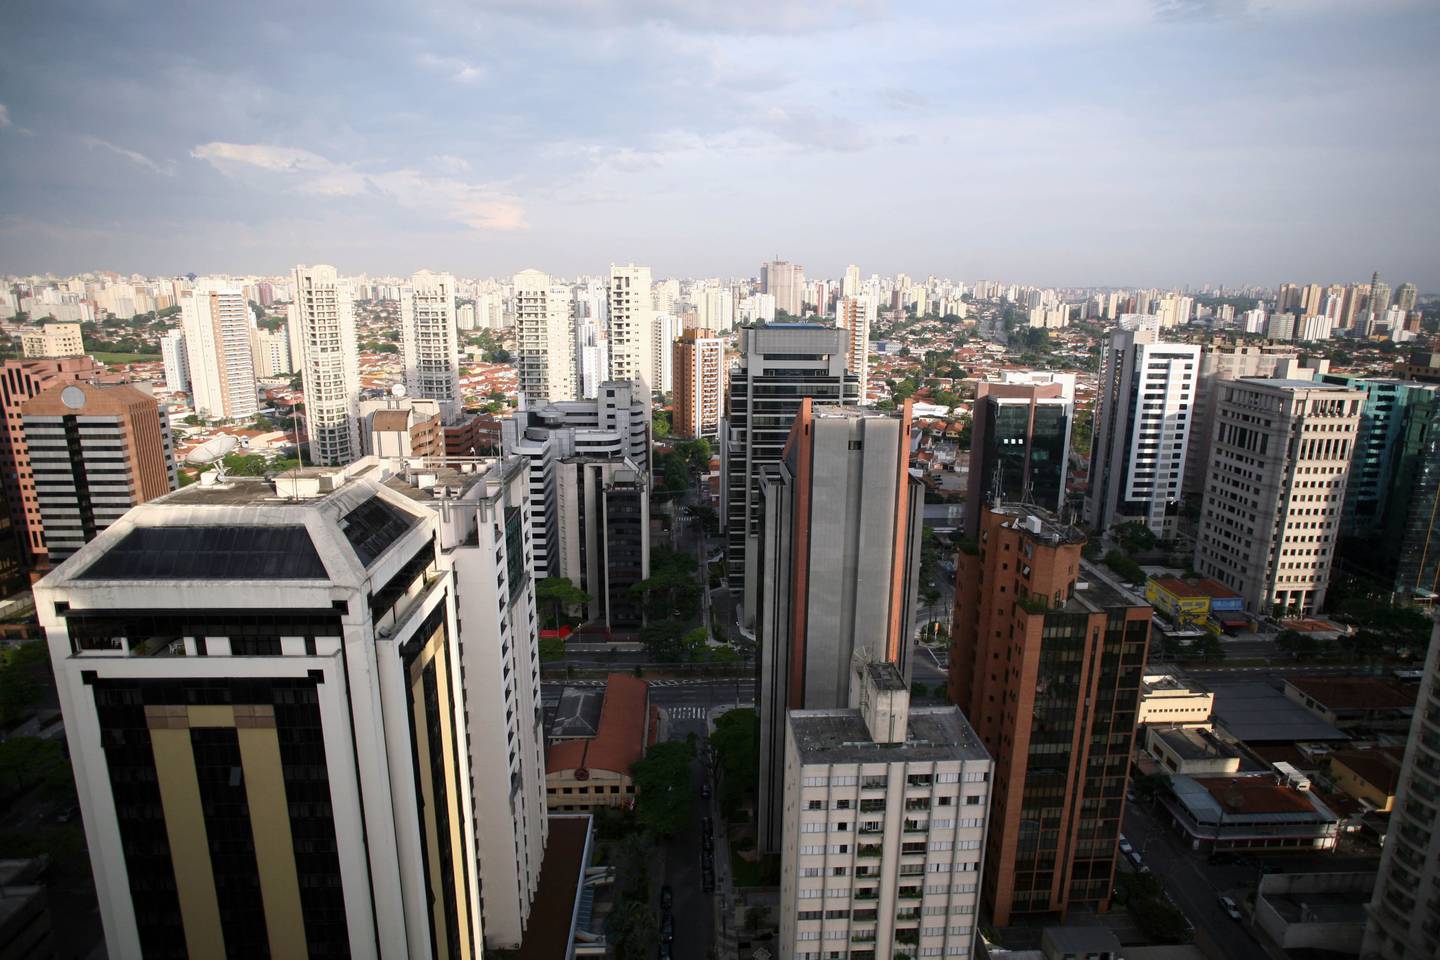 El sol se refleja en los edificios del distrito de Itaim Bibi en Sao Paulo, Brasil, visto el domingo 18 de noviembre de 2007. Fotógrafo: Andrew Harrer/Bloomberg News